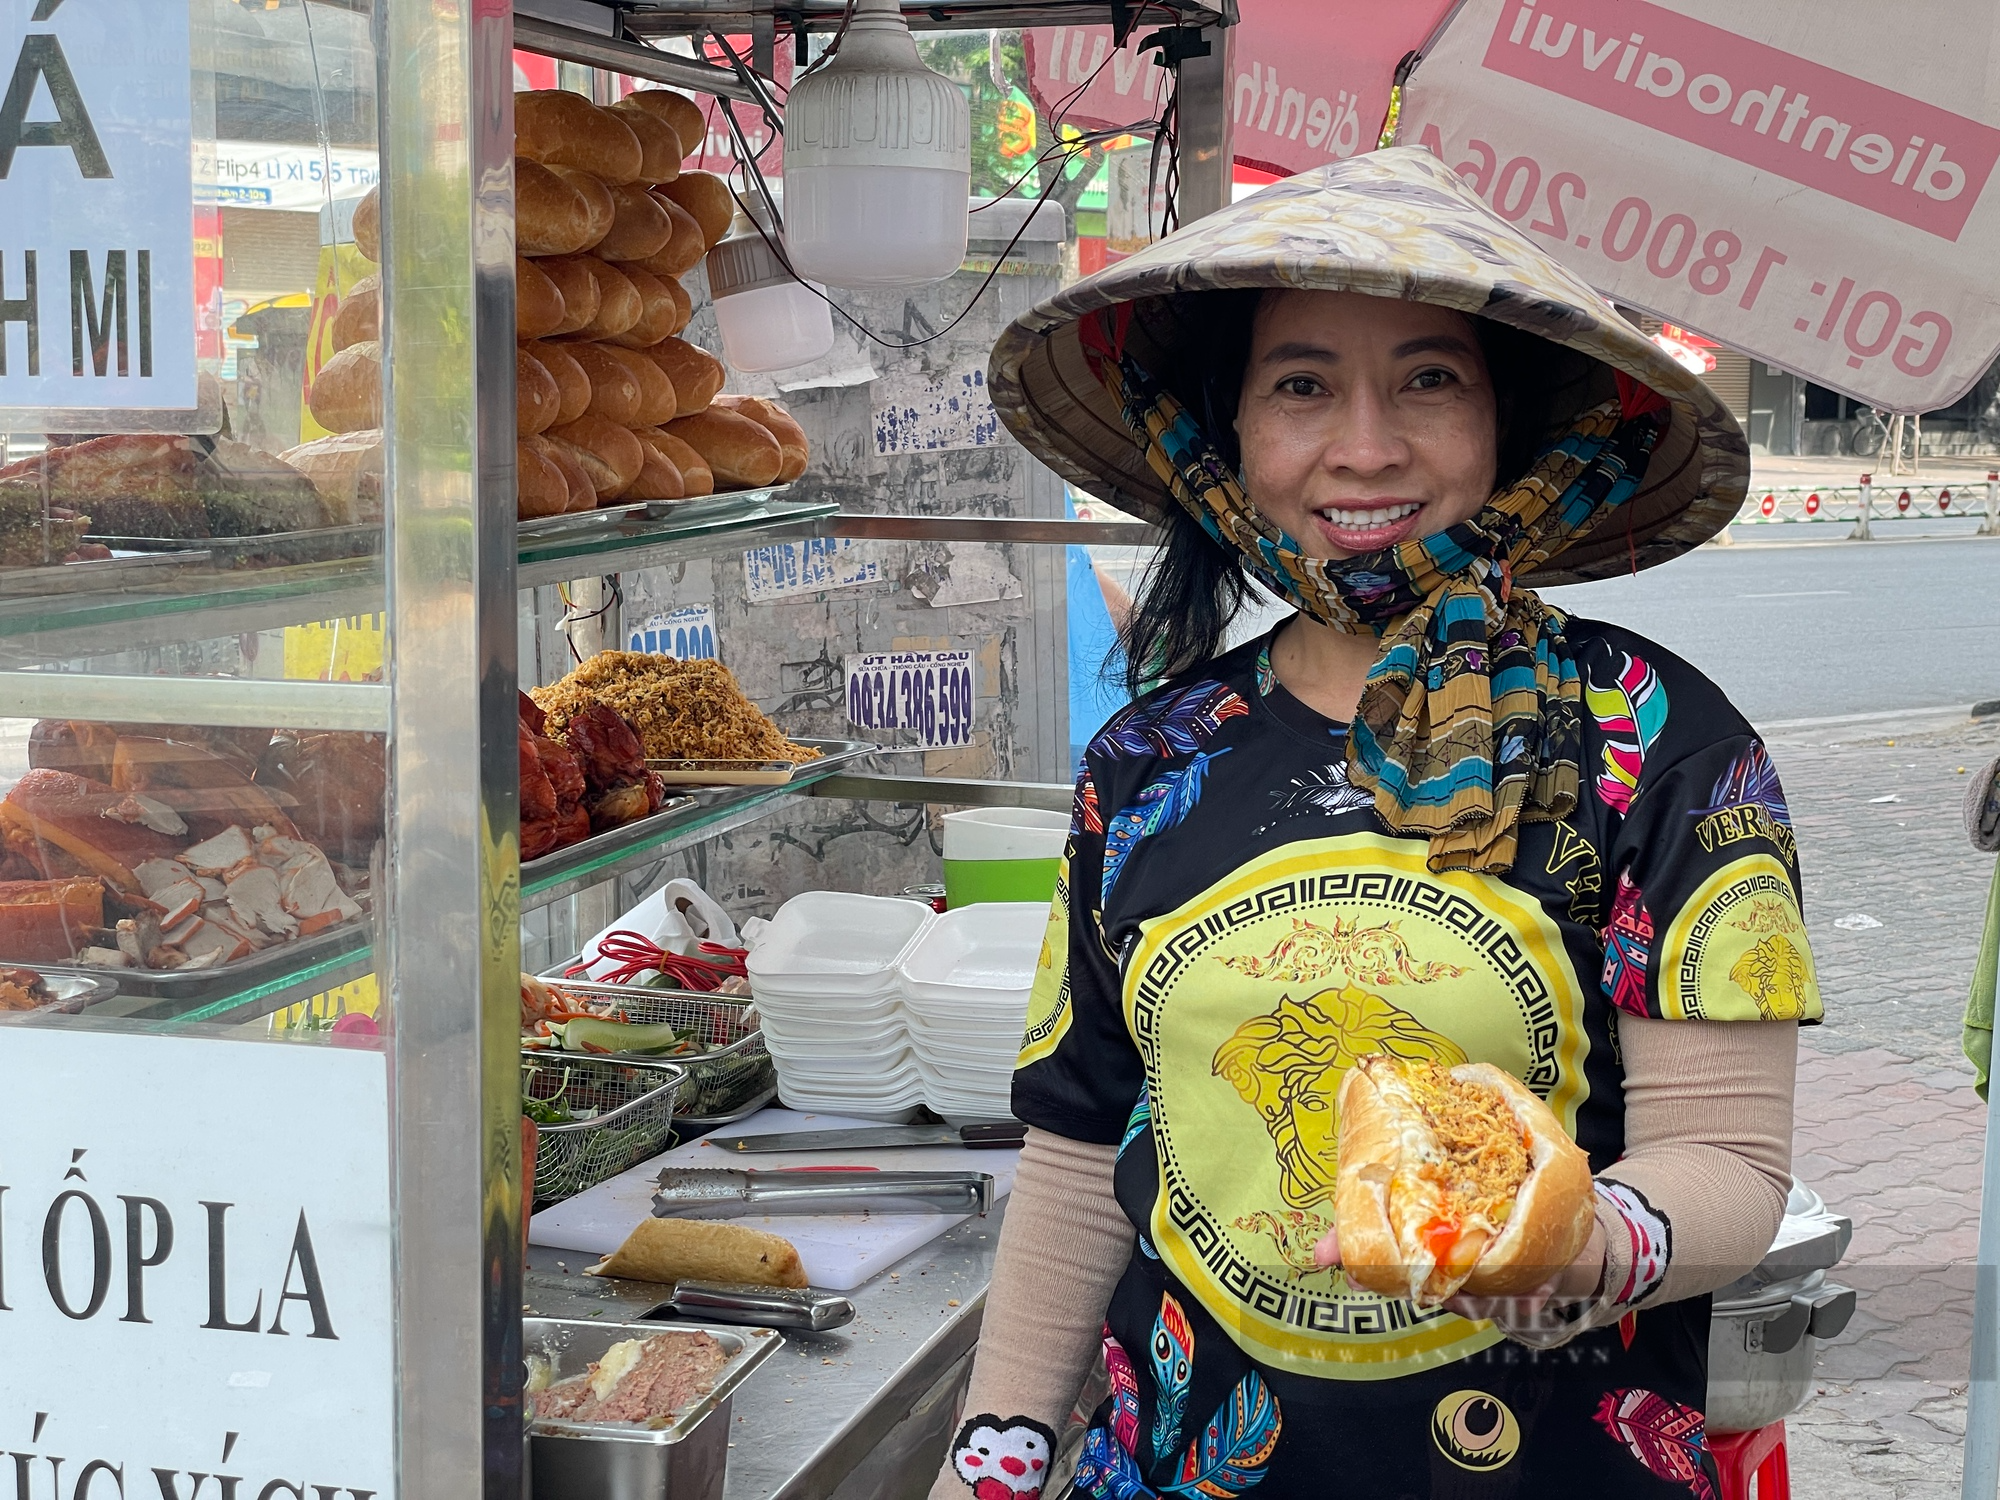 Đưa bánh mì trở thành di sản văn hóa của Việt Nam - Ảnh 3.